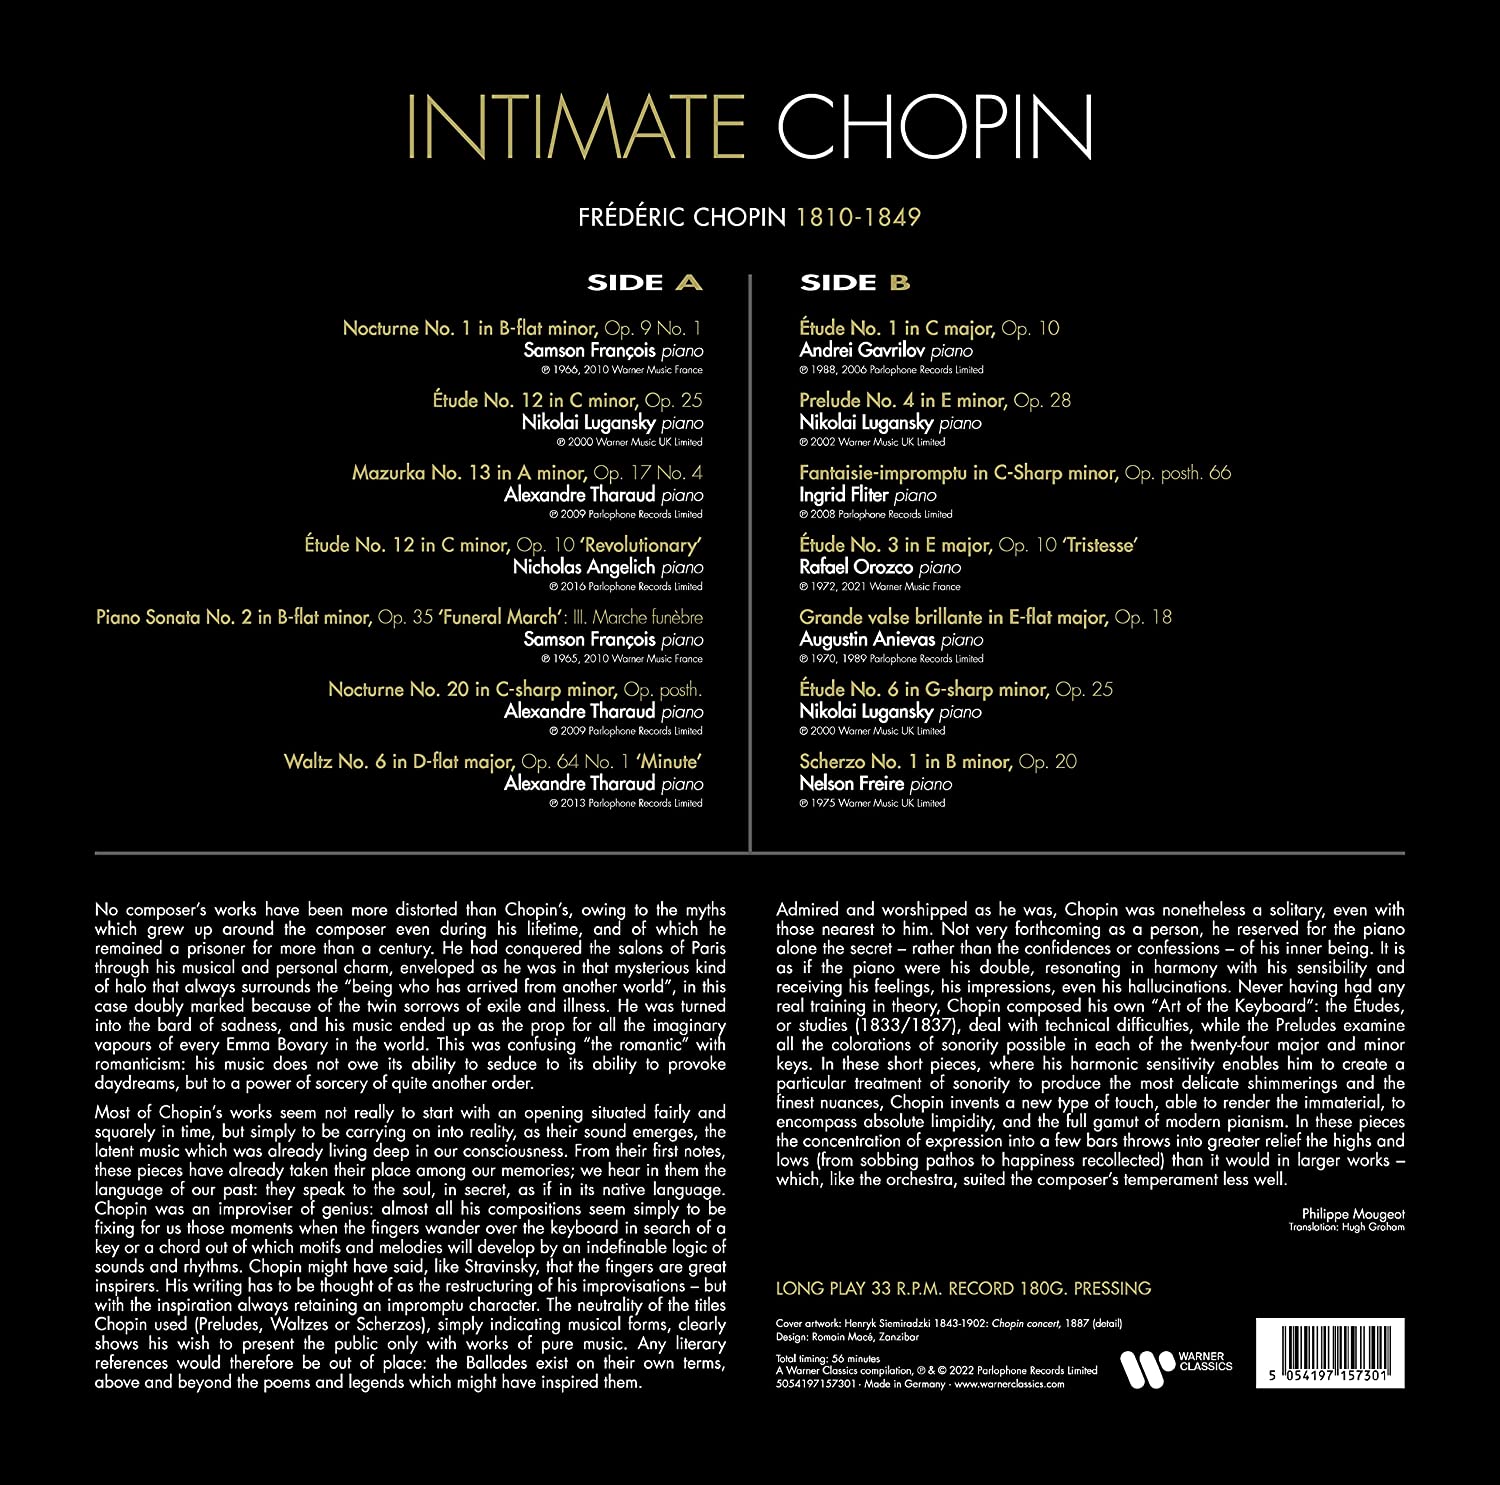 워너 클래식스 레이블 쇼팽 피아노 명연주집 (Intimate Chopin) [LP]